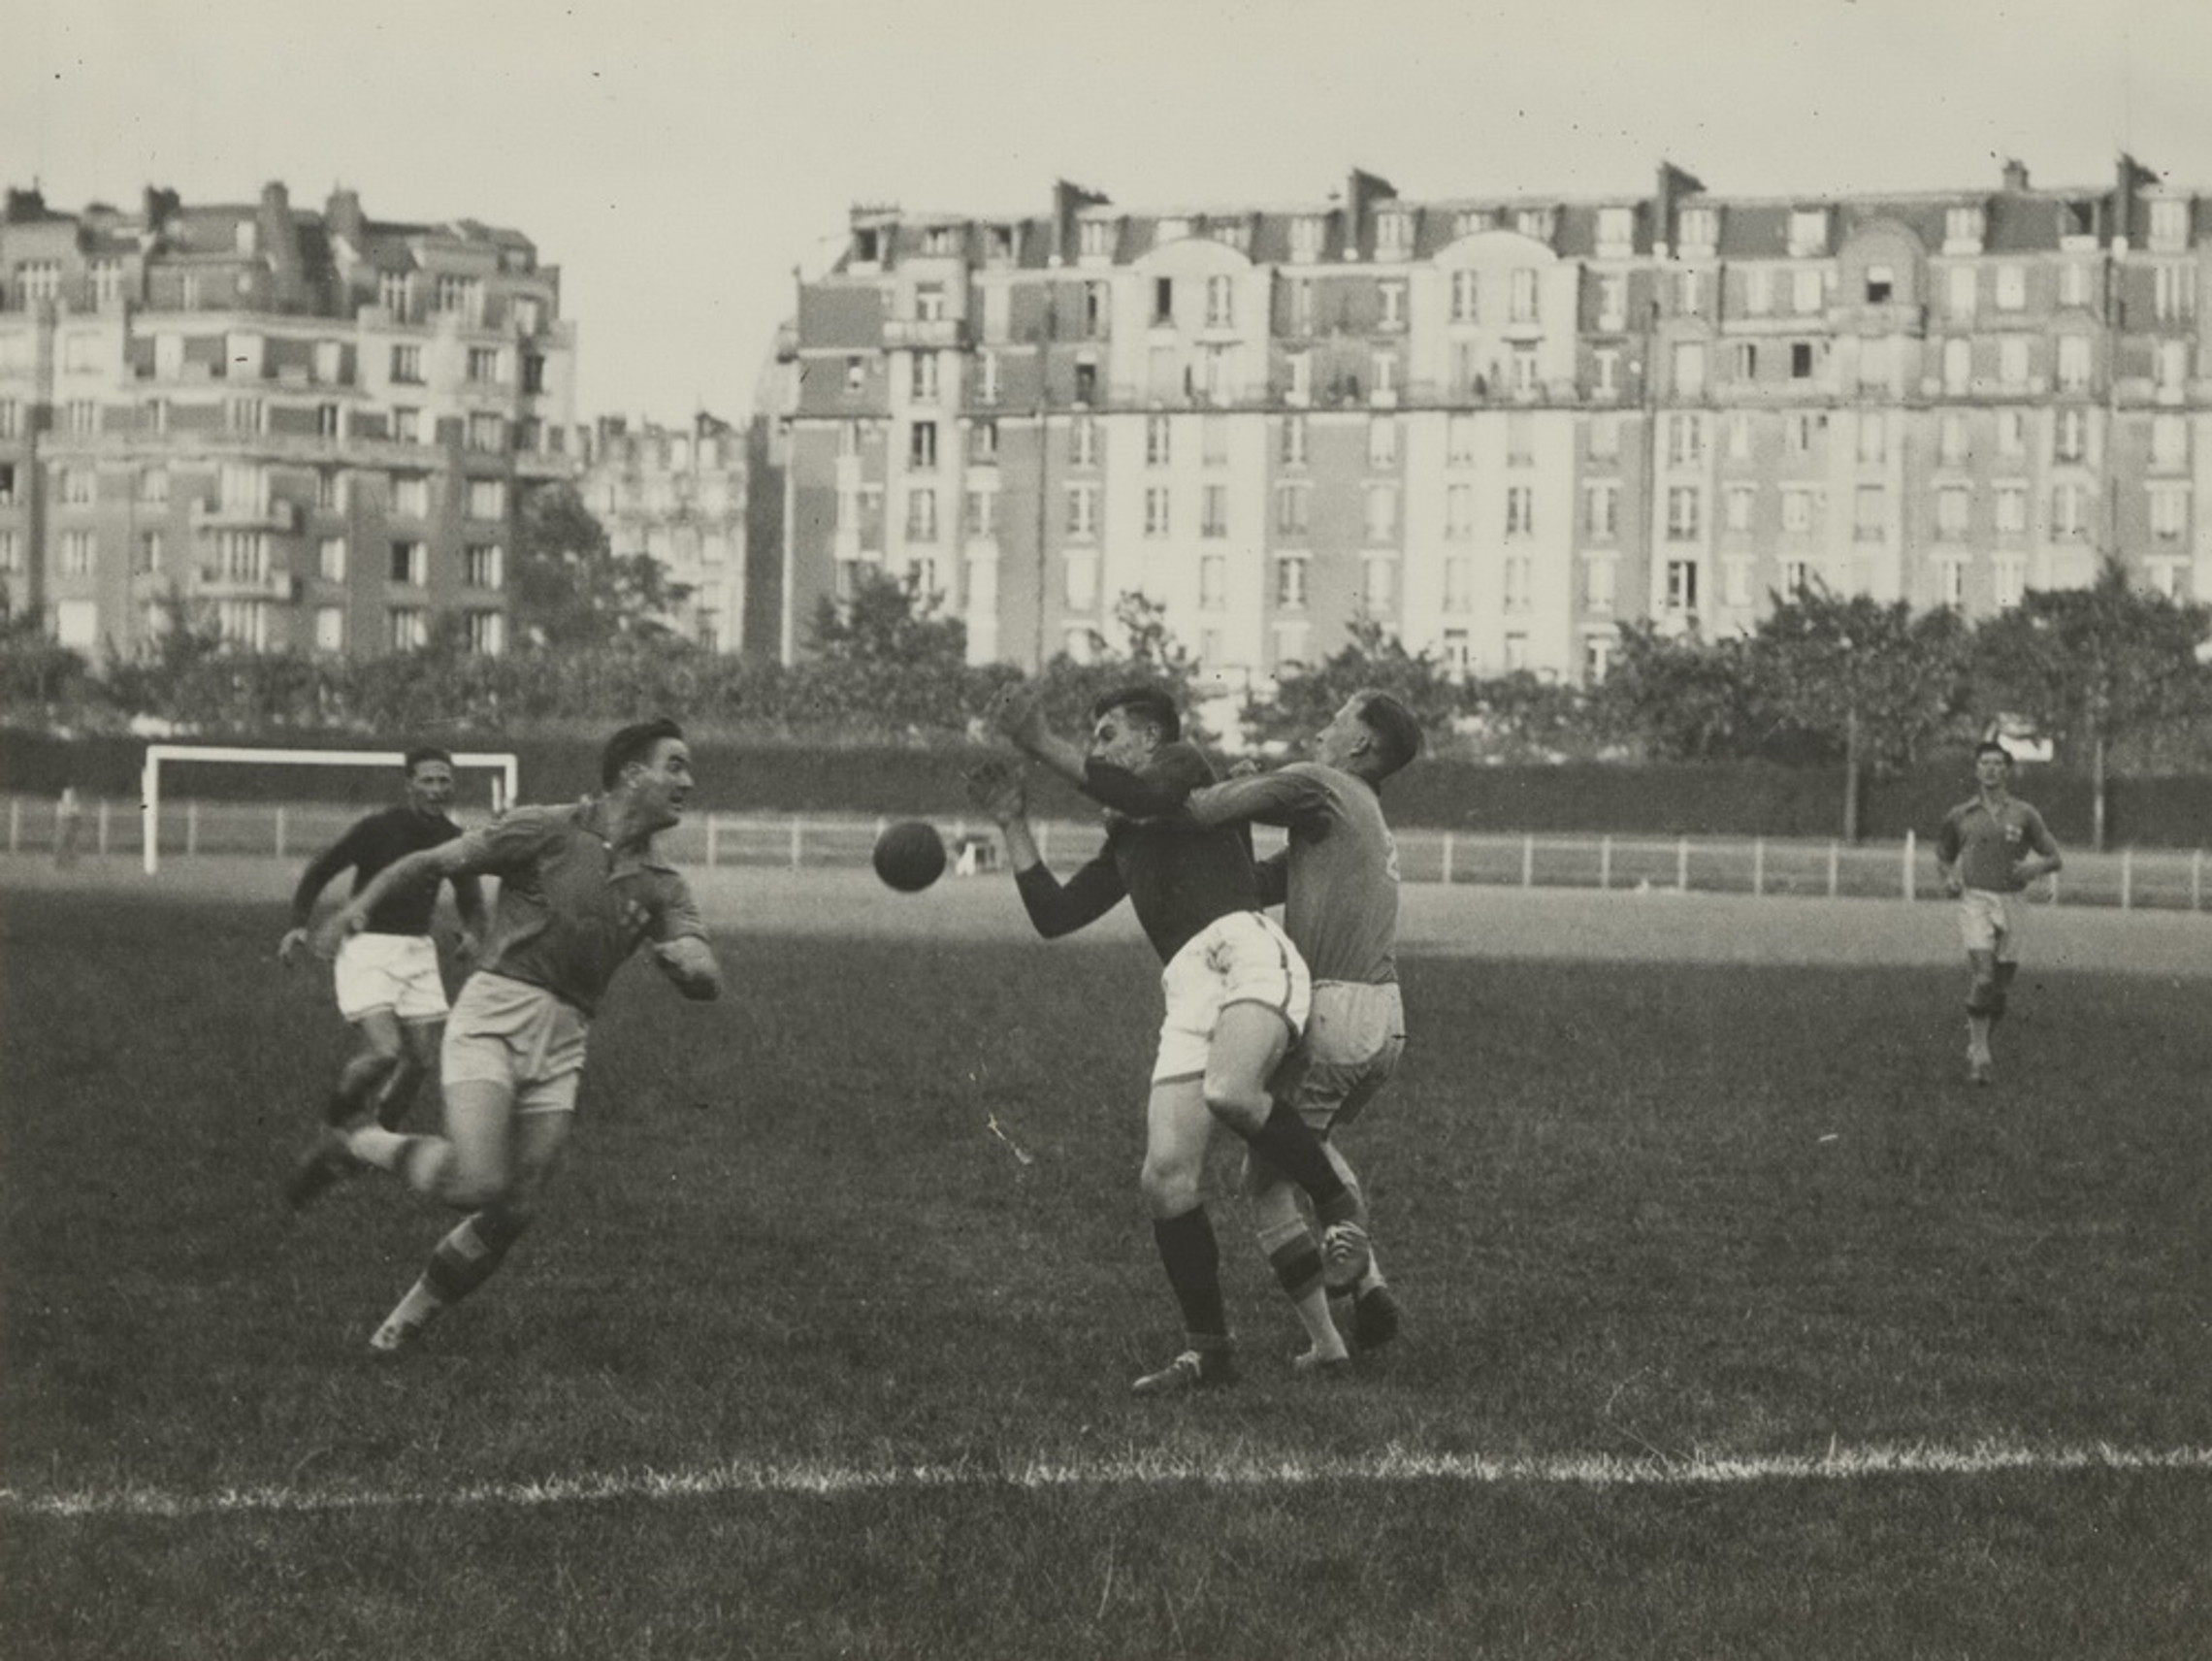 3.-6. Juni 1948 2. Feldhandball Weltmeisterschaft in Paris